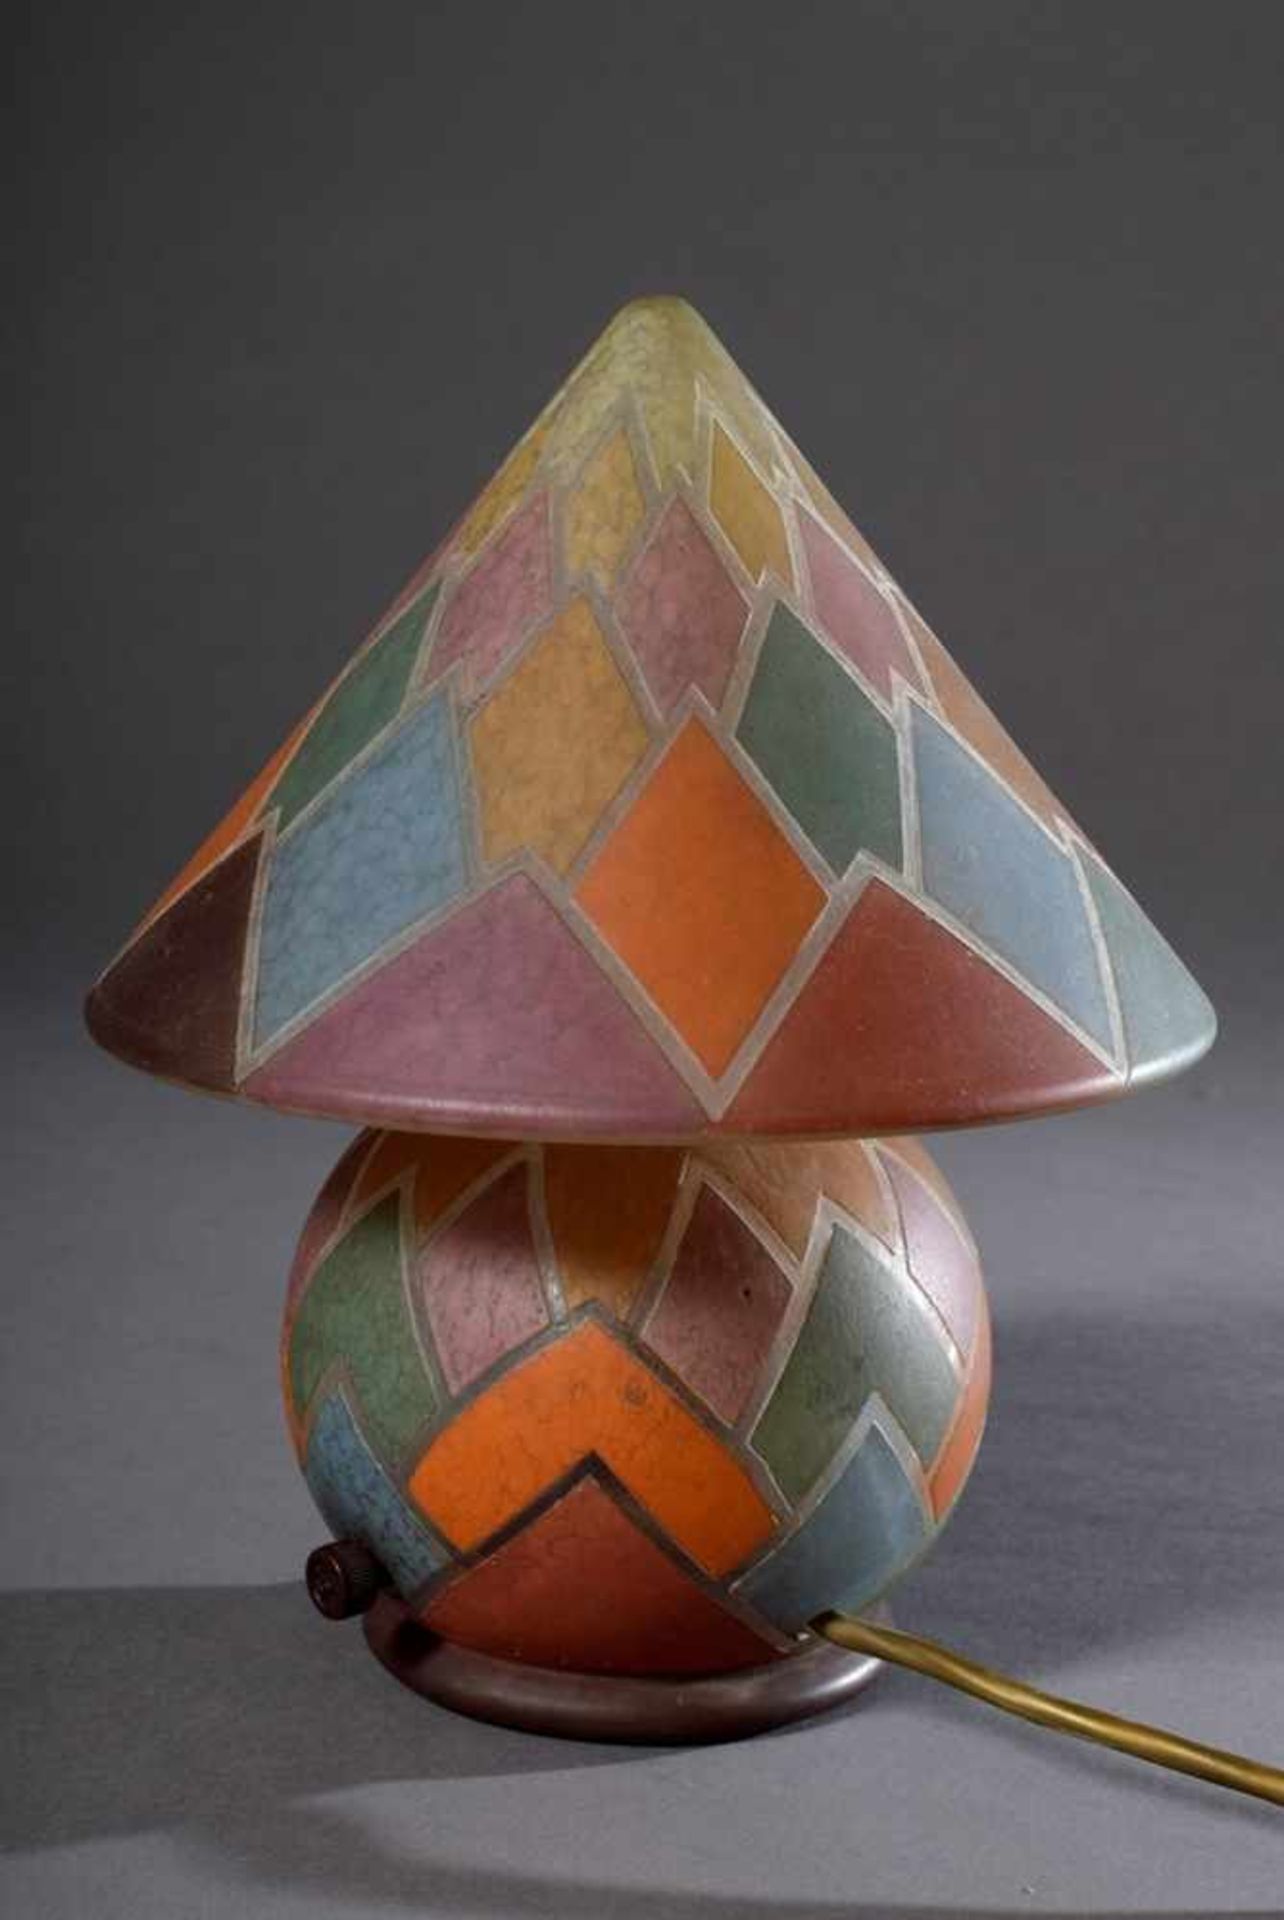 Tschechische Art Deco Lampe in Kugelform mit Kegelhut, farbige Einschmelzungen mit graphischem - Bild 3 aus 5